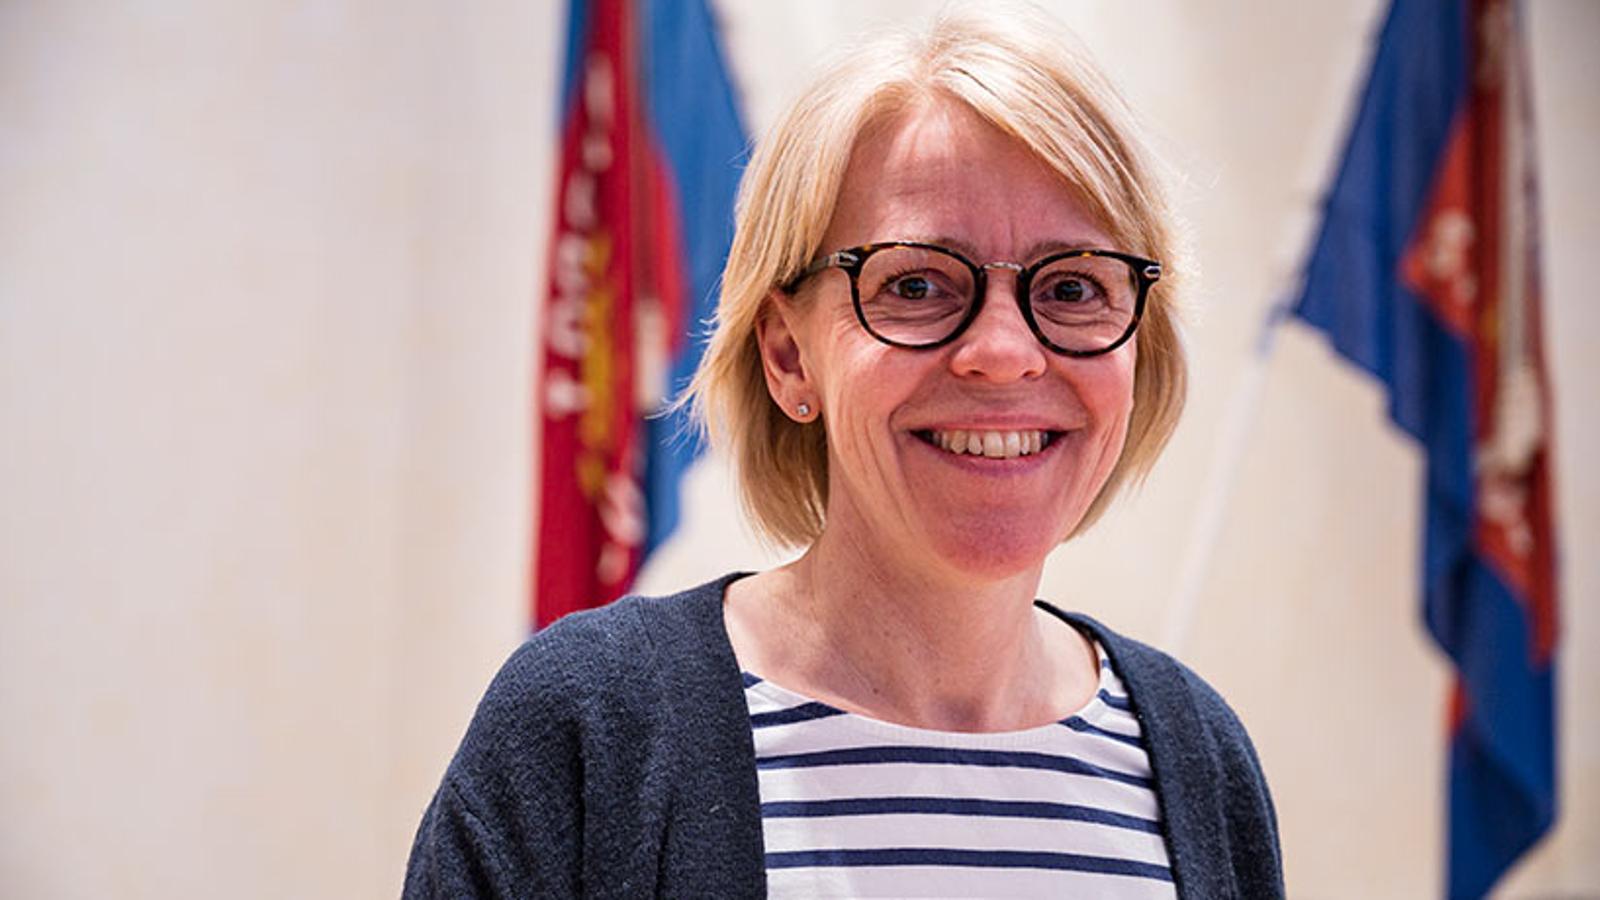 Porträttbild av Anna-Karin Åkerman som ler mot kameran.